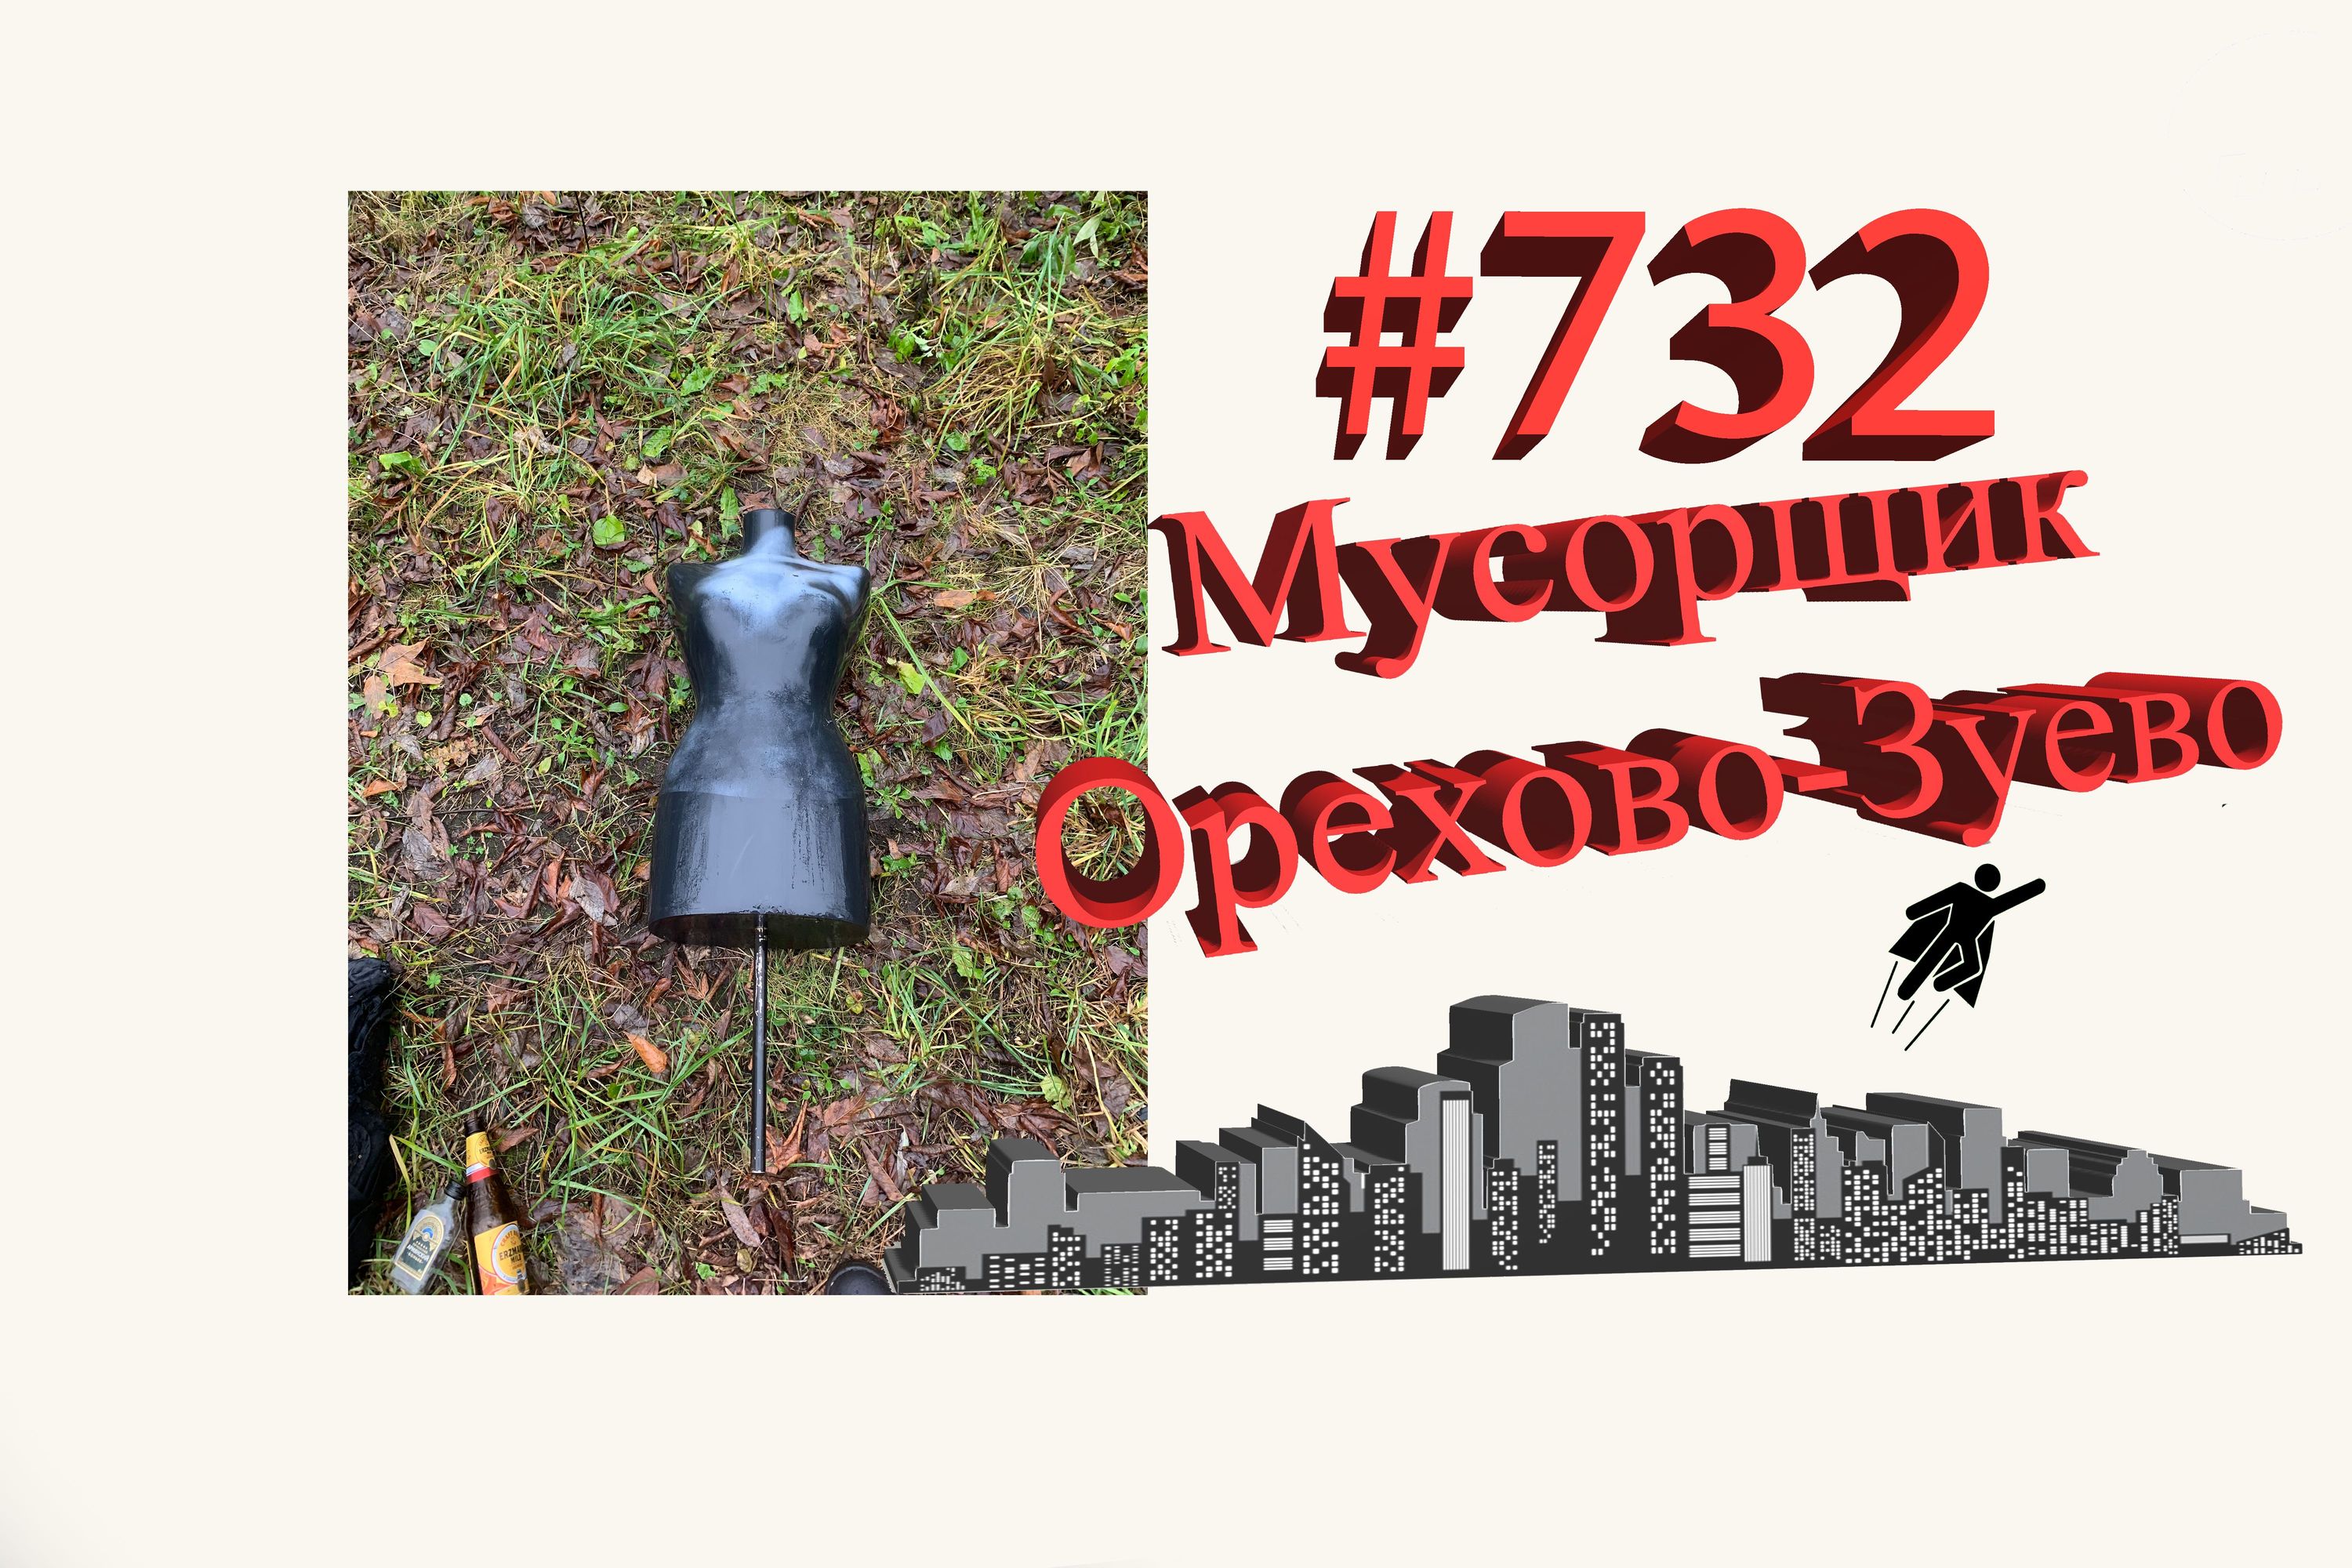 Подмосковье сегодня #732 Орехово-Зуево